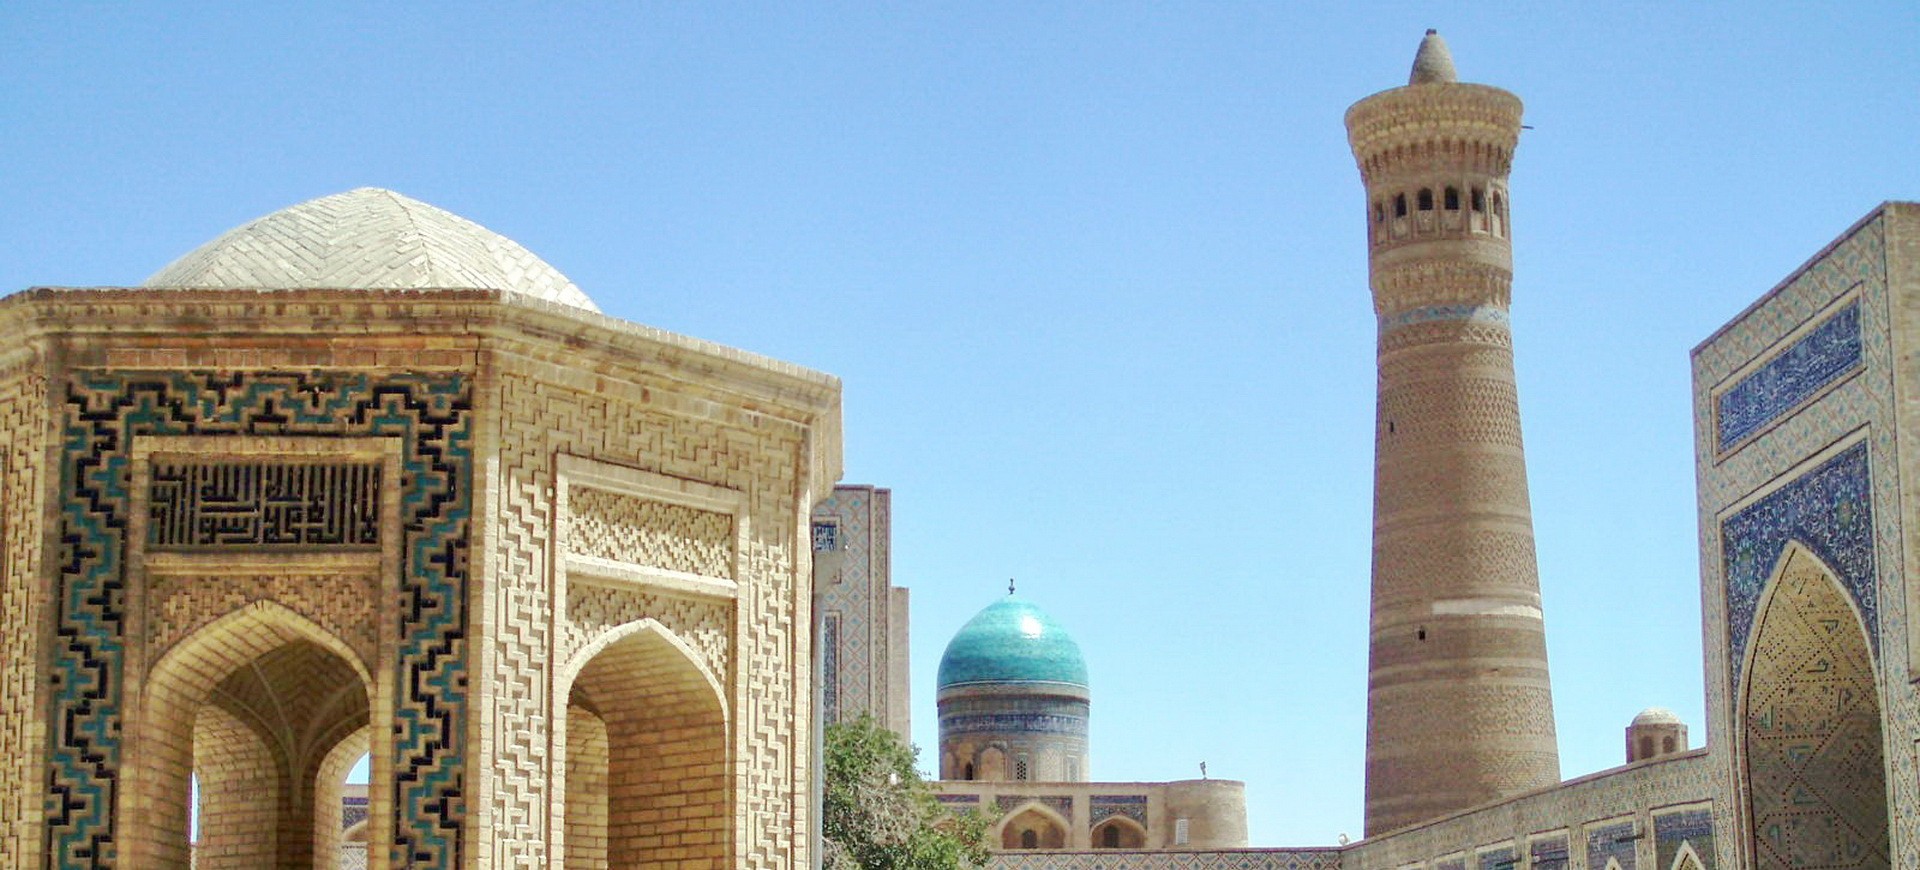 Ouzbékistan Samarcande